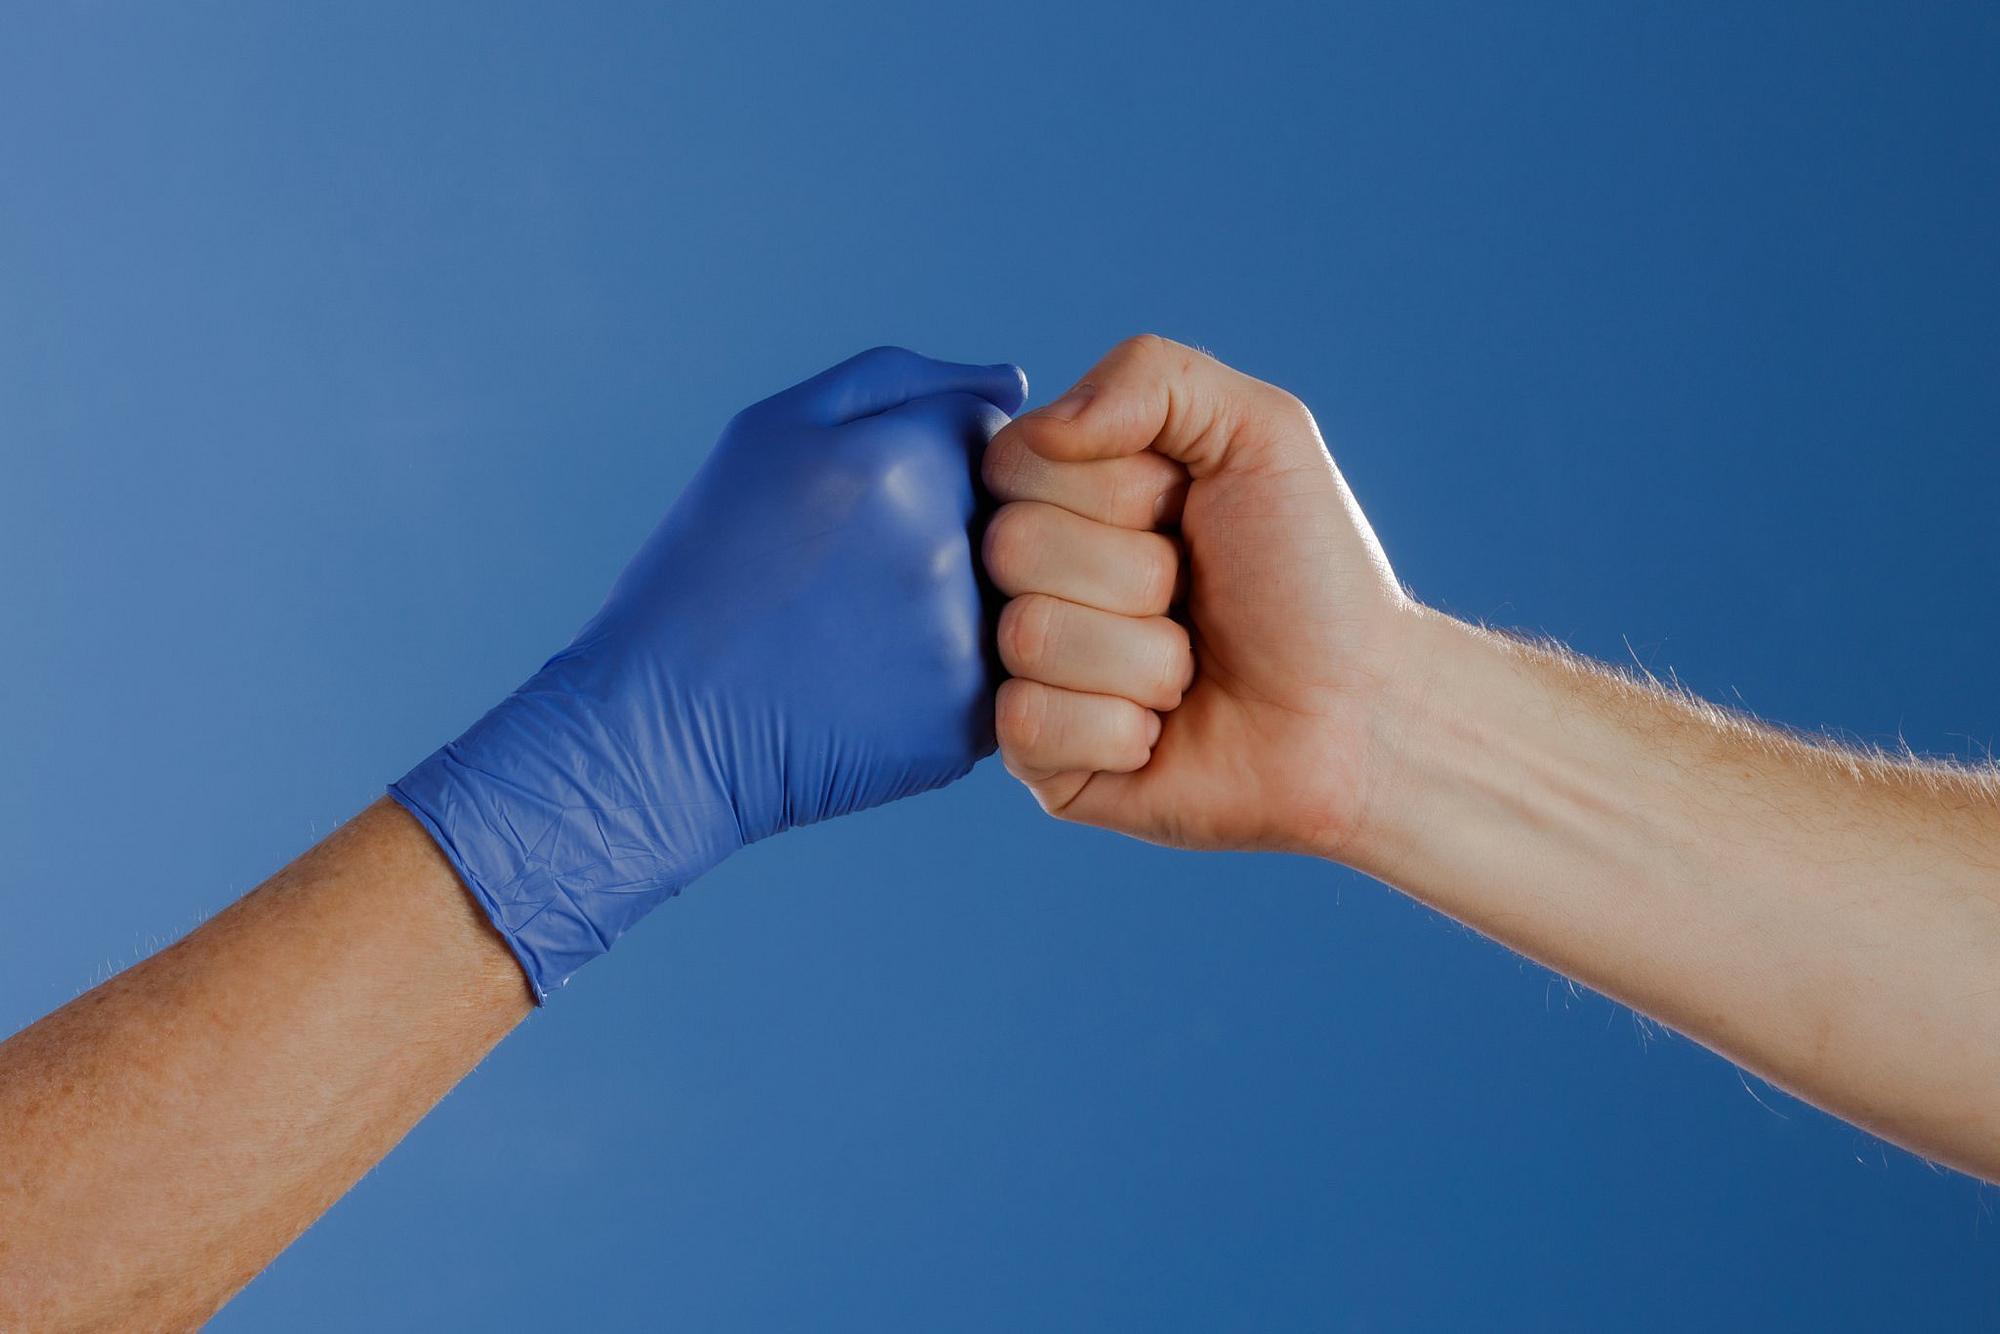 Zwei Männer machen einen Faustschlag eine Hand hat ein blauen Latexhandschuh an und einer nicht